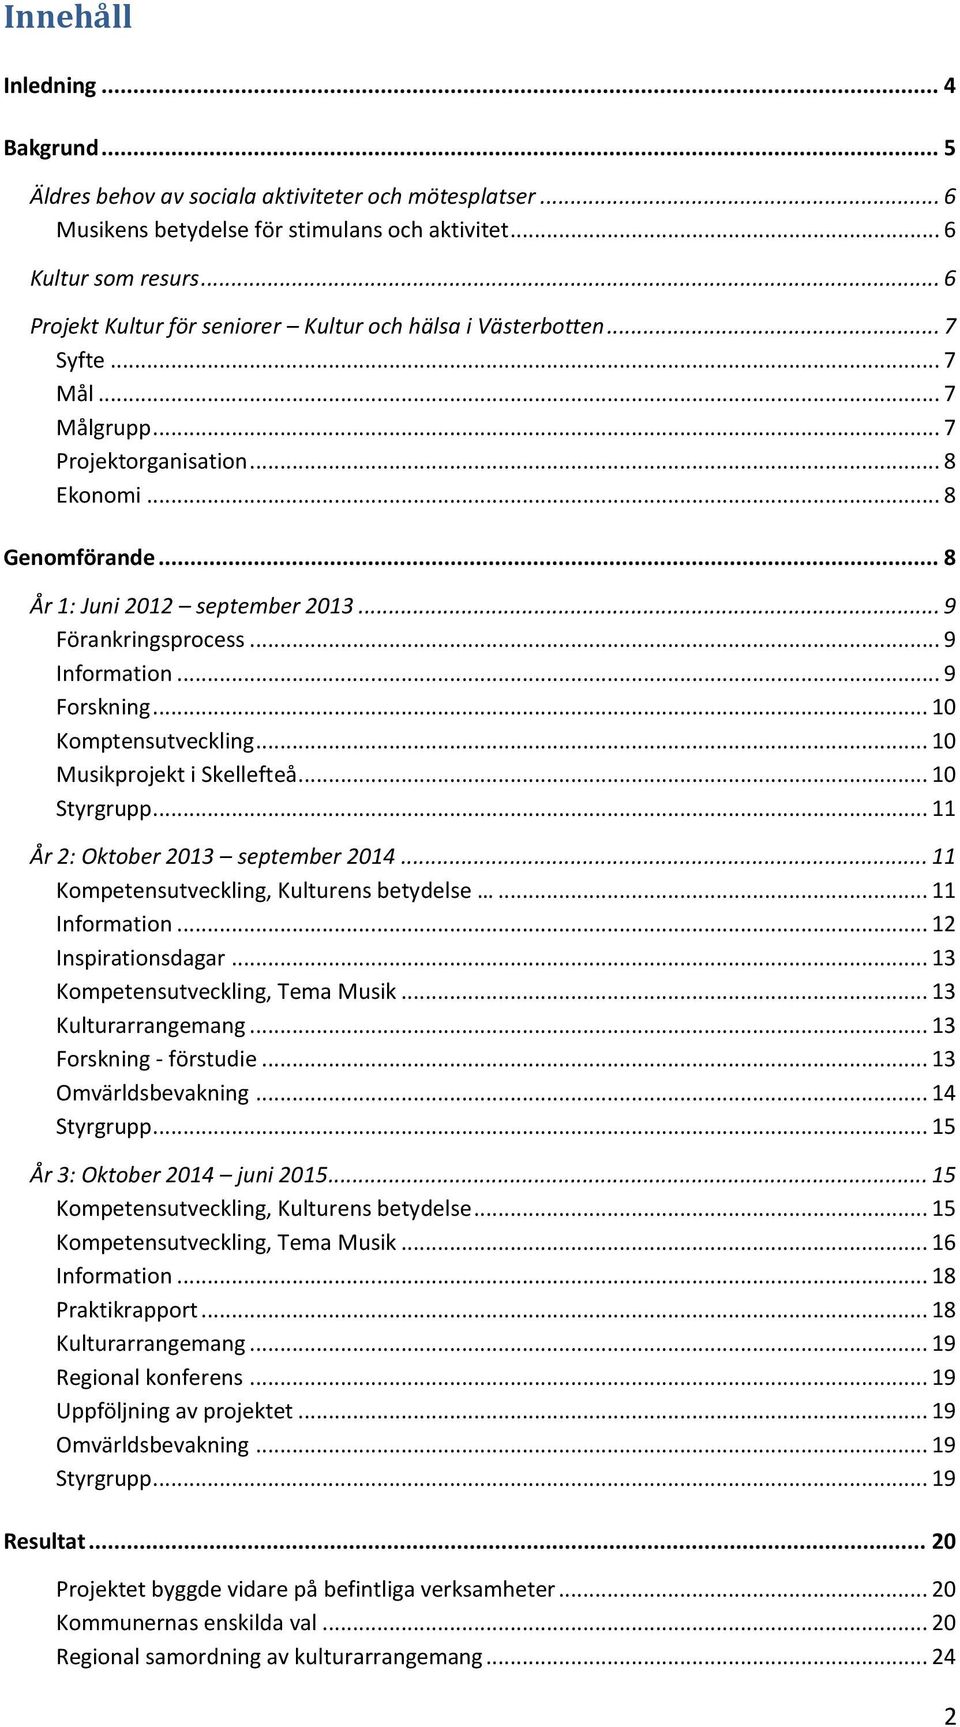 .. 9 Förankringsprocess... 9 Information... 9 Forskning... 10 Komptensutveckling... 10 Musikprojekt i Skellefteå... 10 Styrgrupp... 11 År 2: Oktober 2013 september 2014.